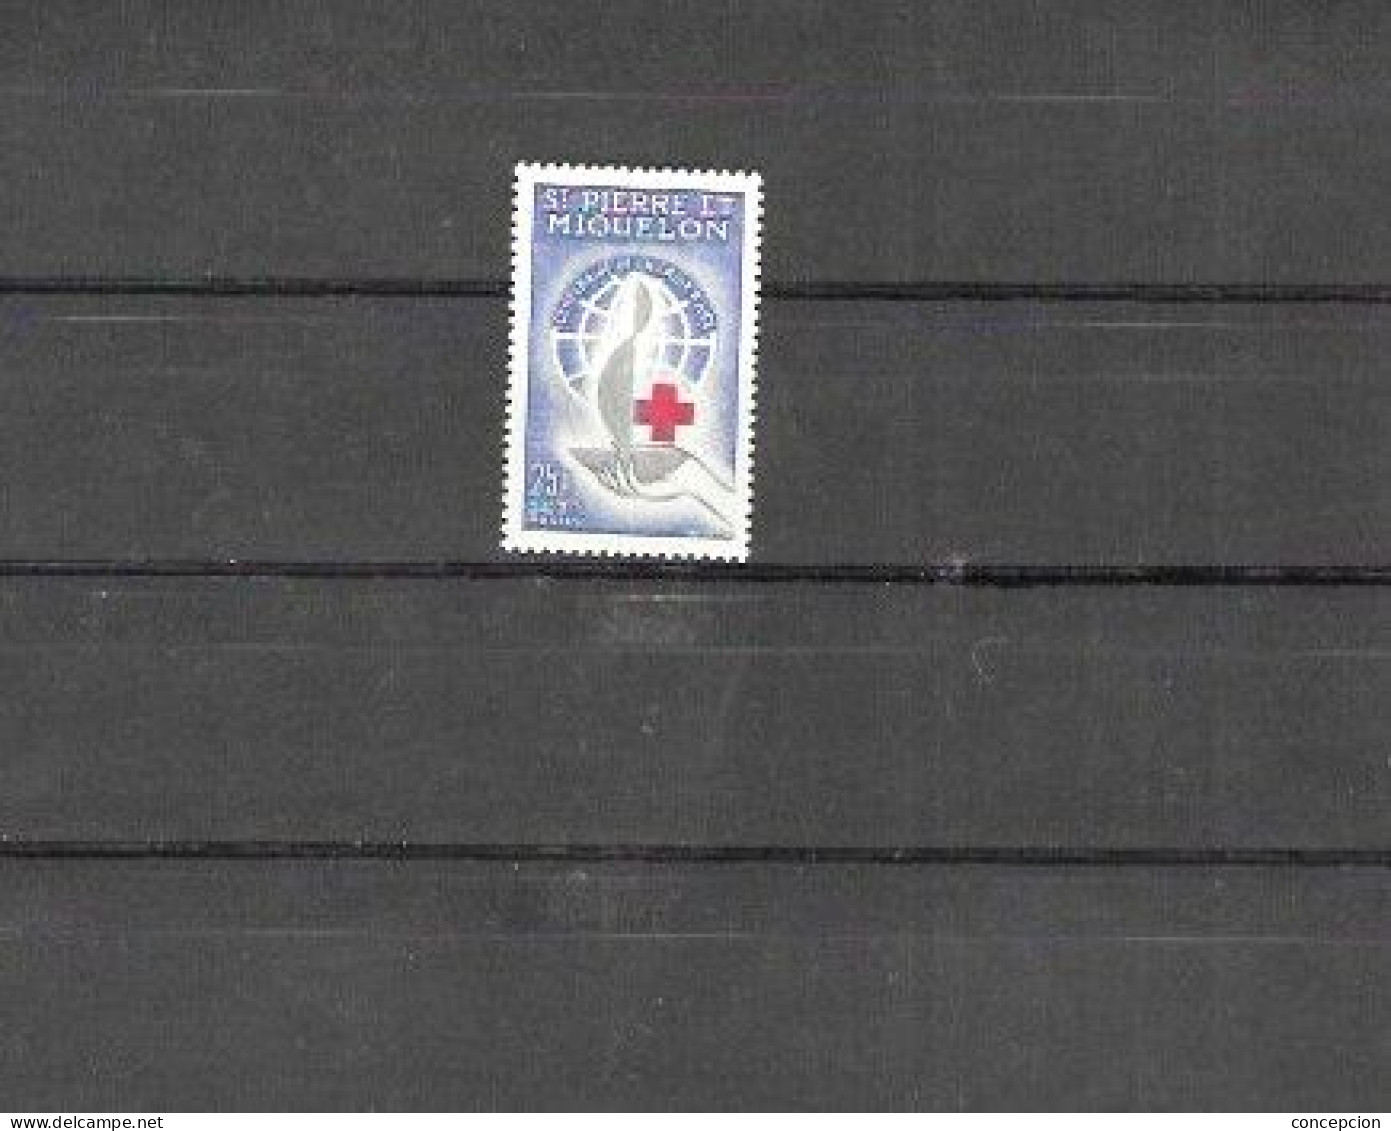 SAN PIERR MIQUELON Nº  369 - Unused Stamps